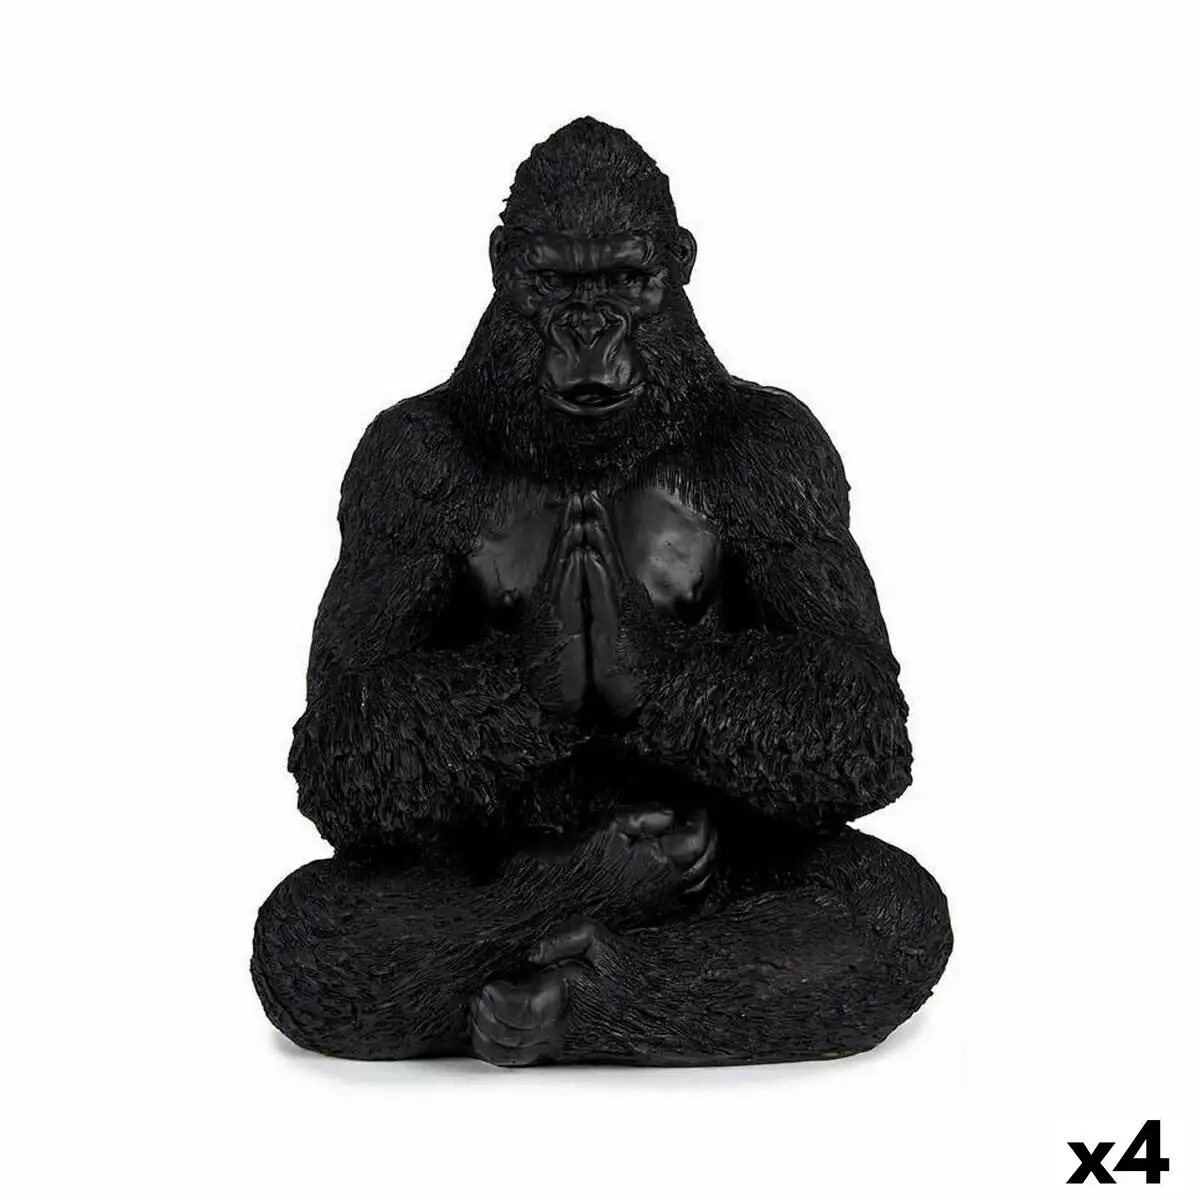 Figurine decorative gorille yoga noir 16 x 28 x 22 cm 4 unites _5998. DIAYTAR SENEGAL - L'Art de Magasiner sans Frontières. Parcourez notre vaste sélection d'articles et trouvez tout ce dont vous avez besoin, du chic à l'authentique, du moderne au traditionnel.